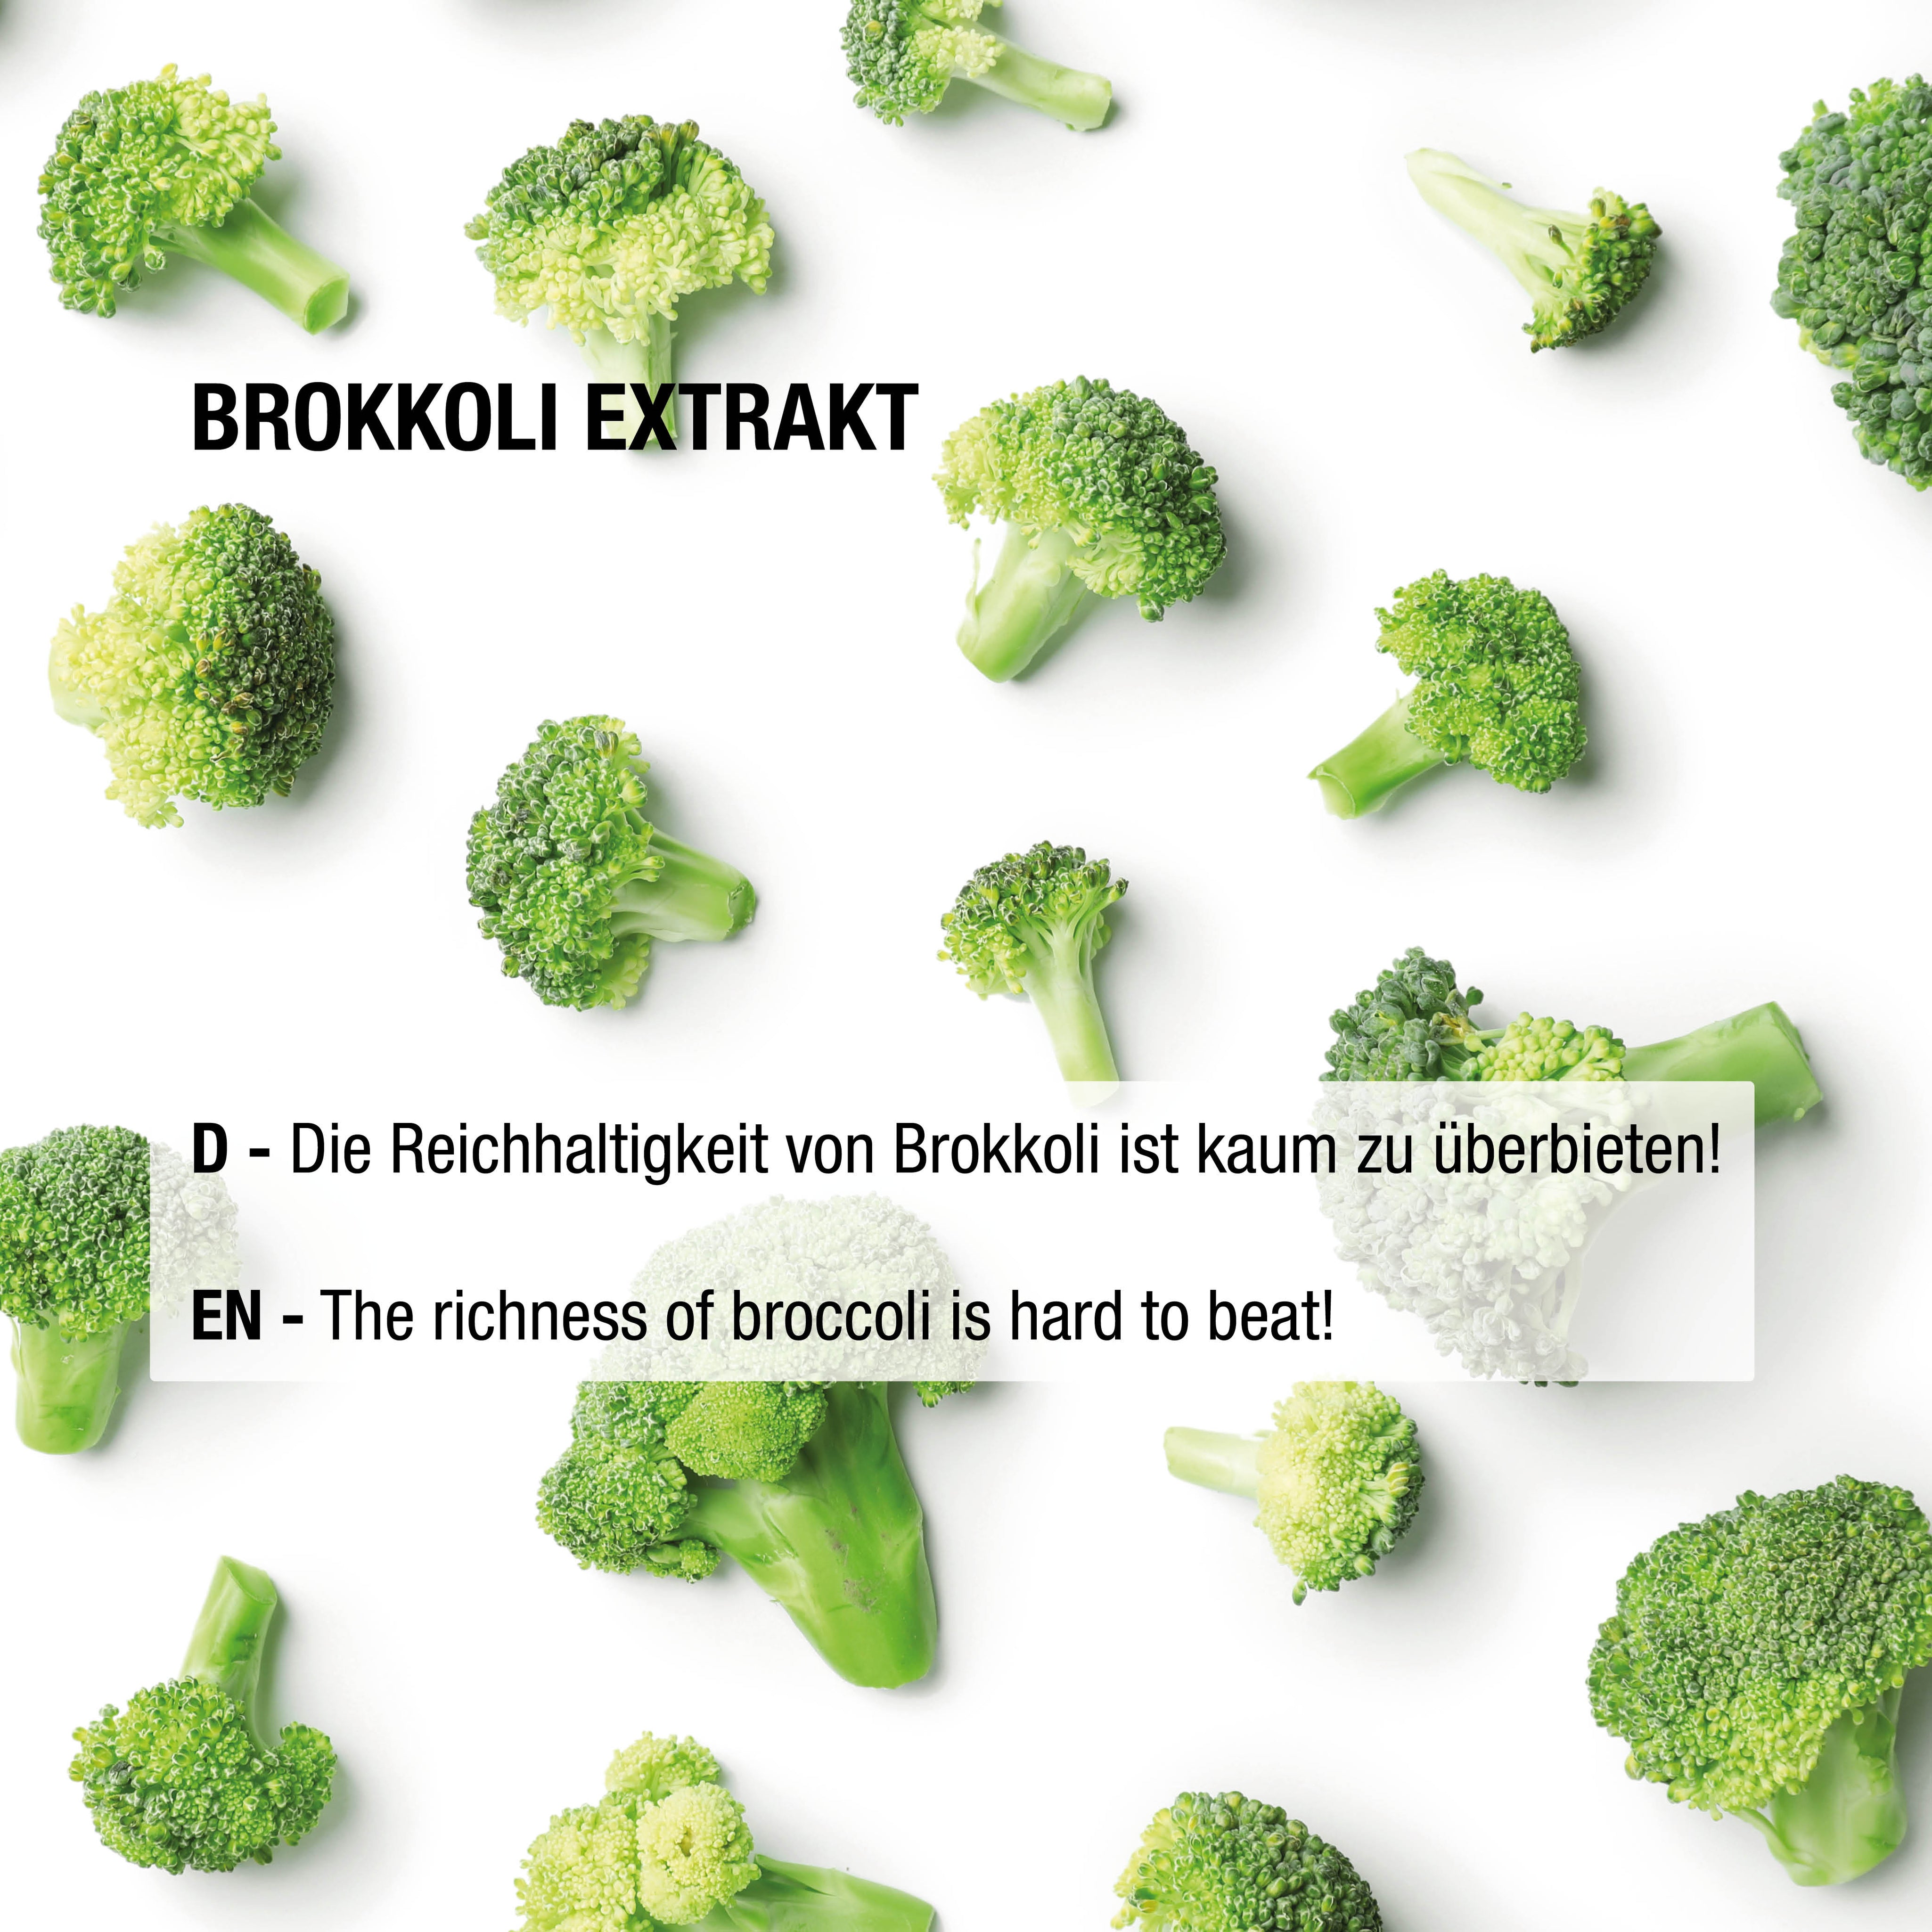 Brokkoli Extrakt mit Sulforaphan 500 mg - 60 vegane Kapseln